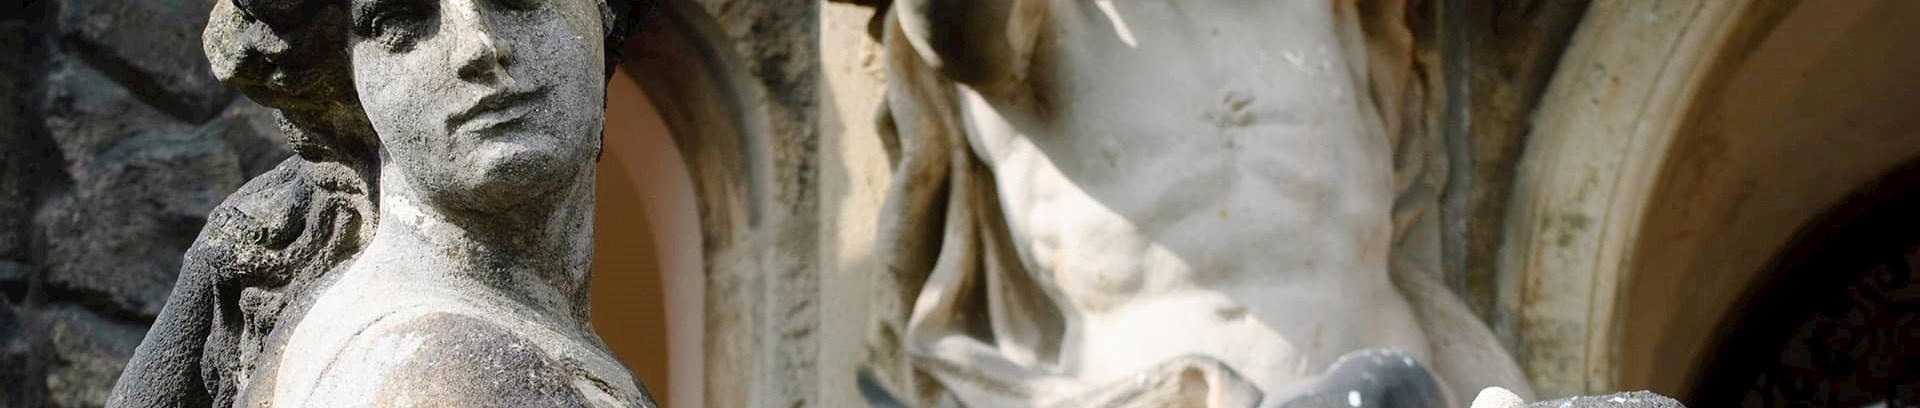 Barok statue som del af udsmykning på bygning